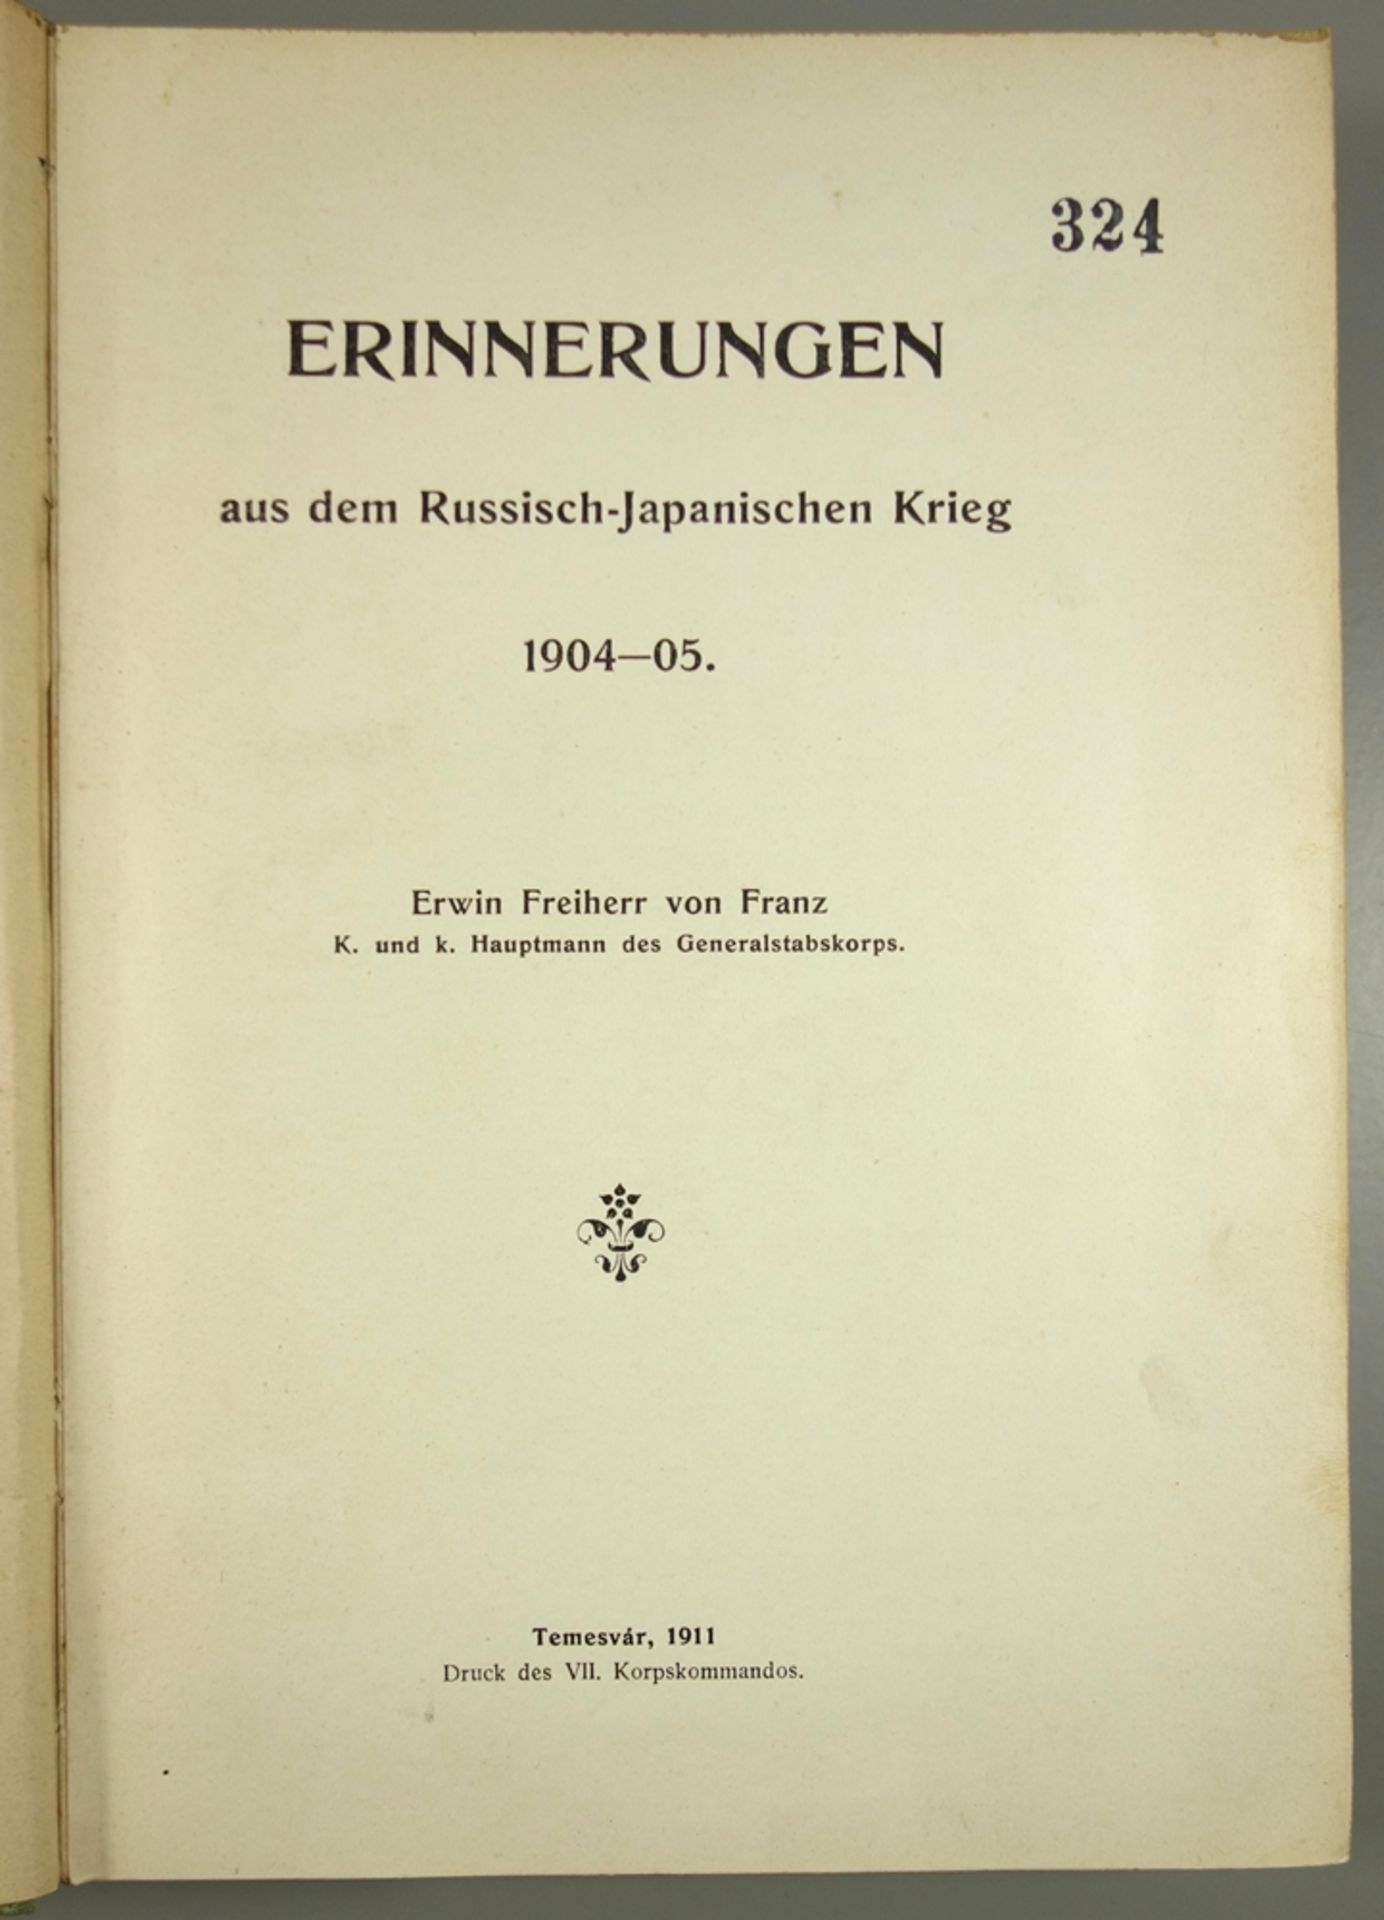 Erinnerungen aus dem Russisch-Japanischen Krieg 1904-05, Erwin Freiherr von Franz, Druck des VII. - Image 2 of 2